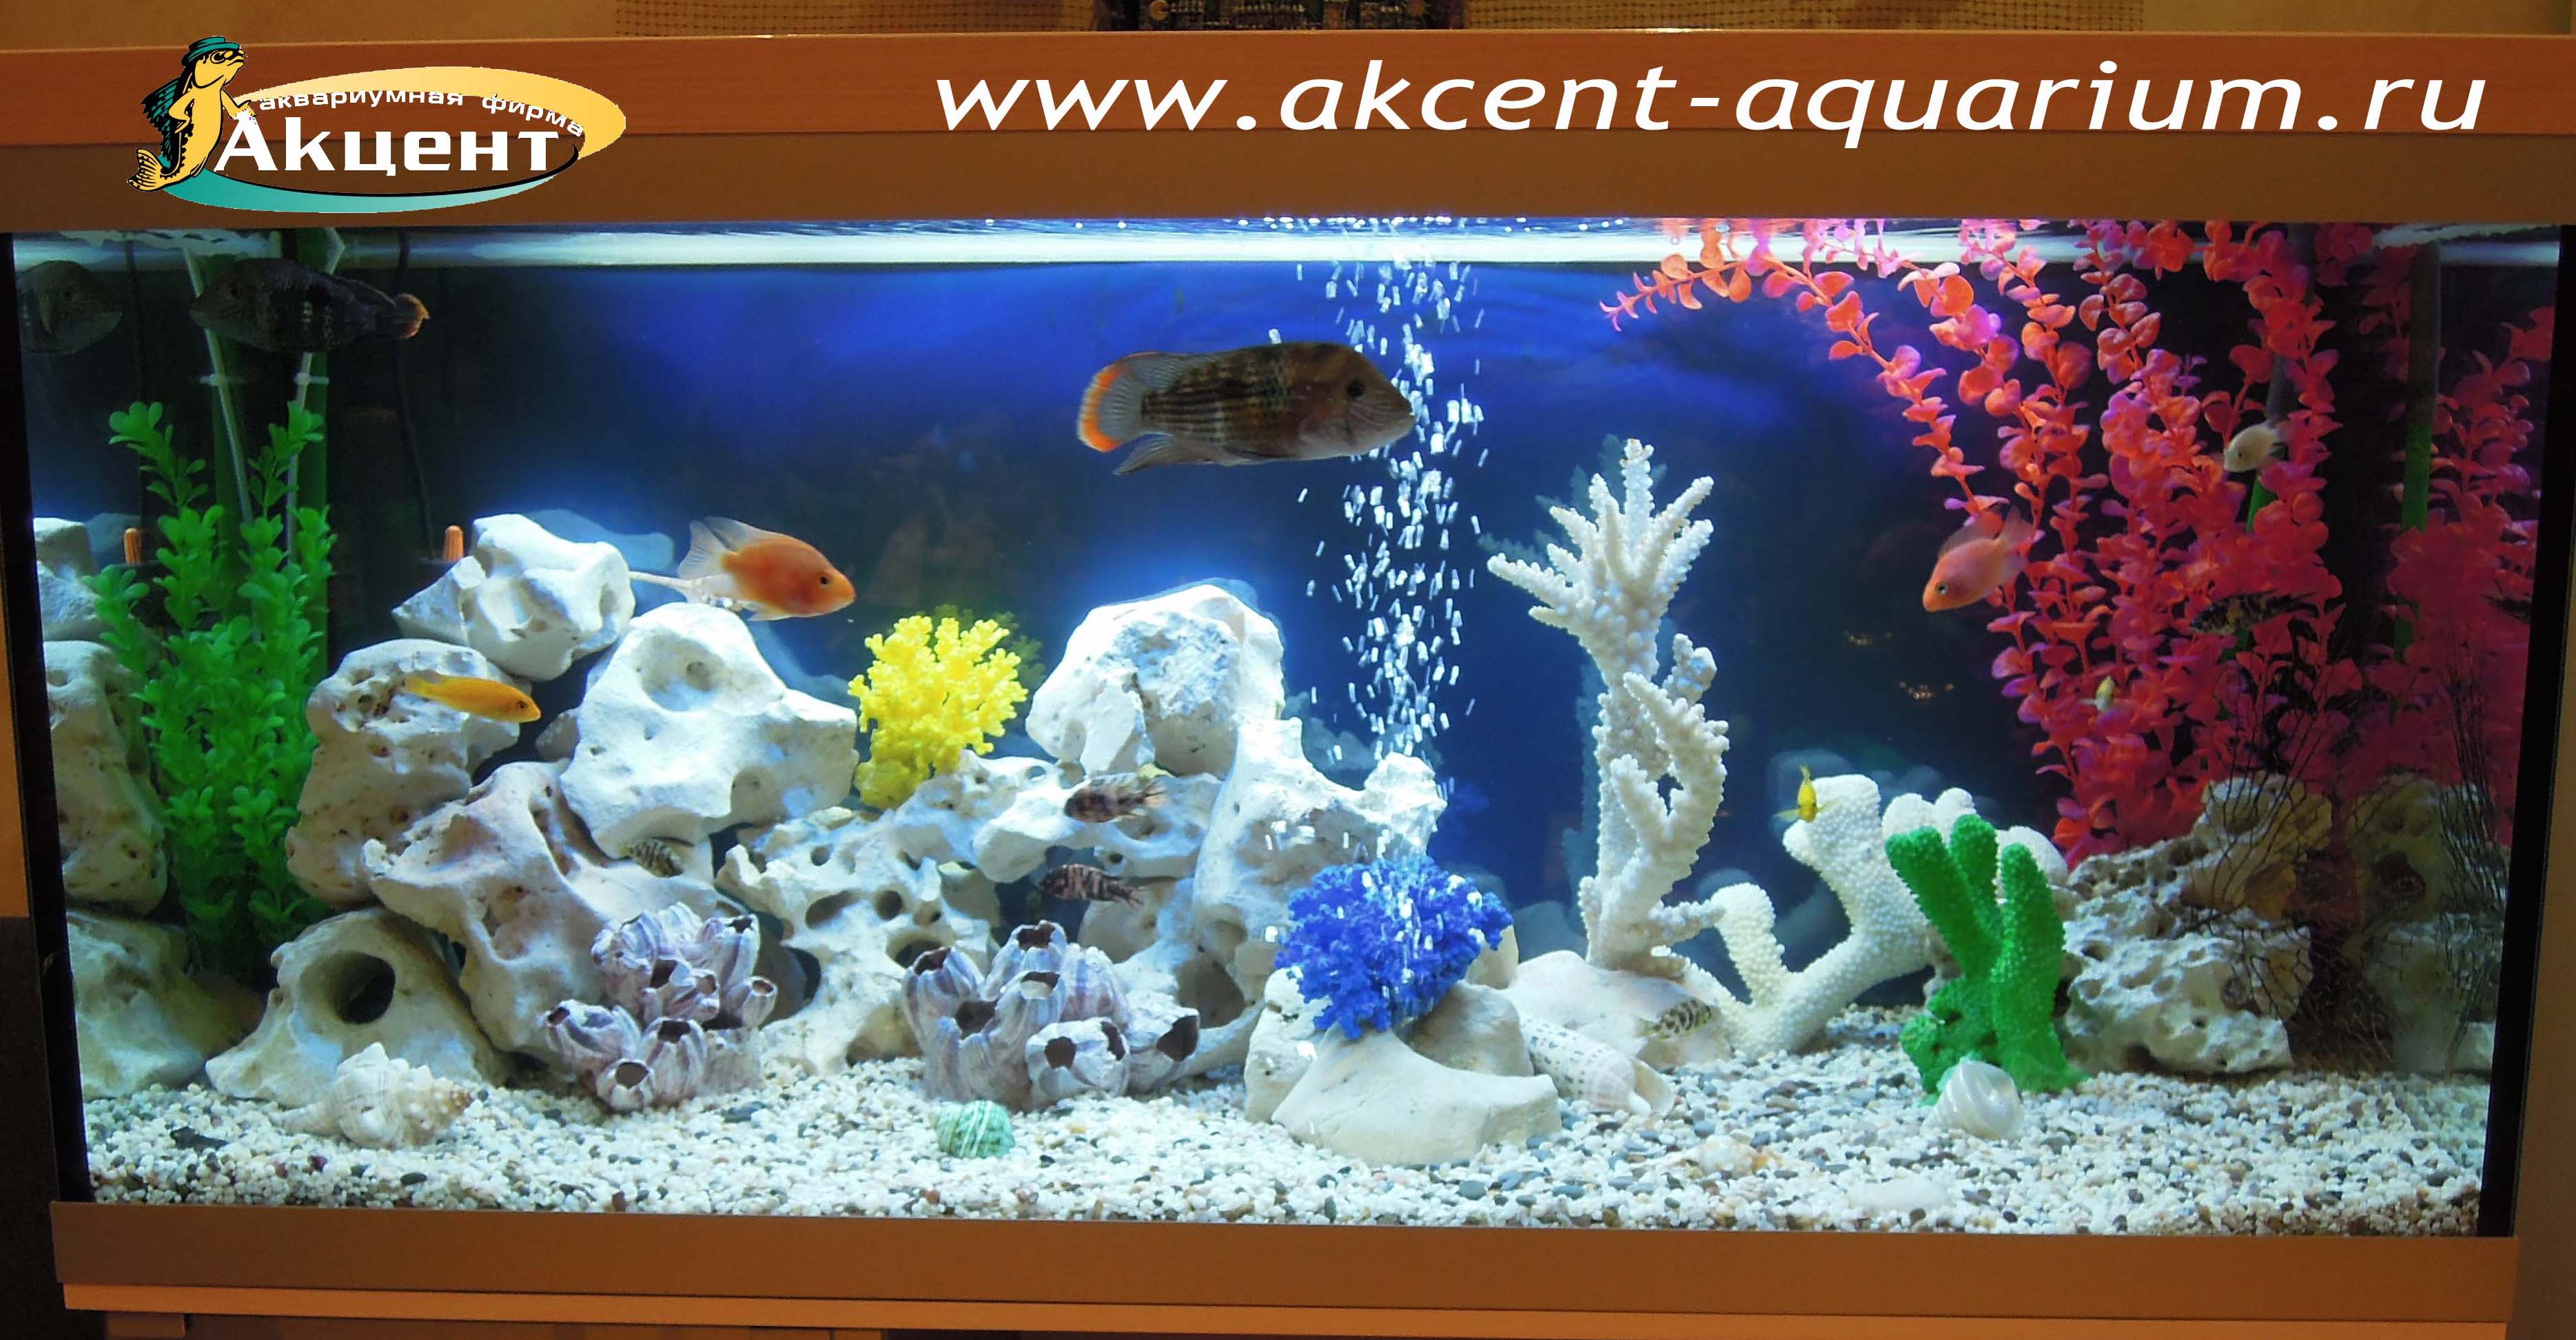 Акцент-аквариум, аквариум 250 литров, псевдоморе, бирюзовая акара, попугай, африканские цихлиды